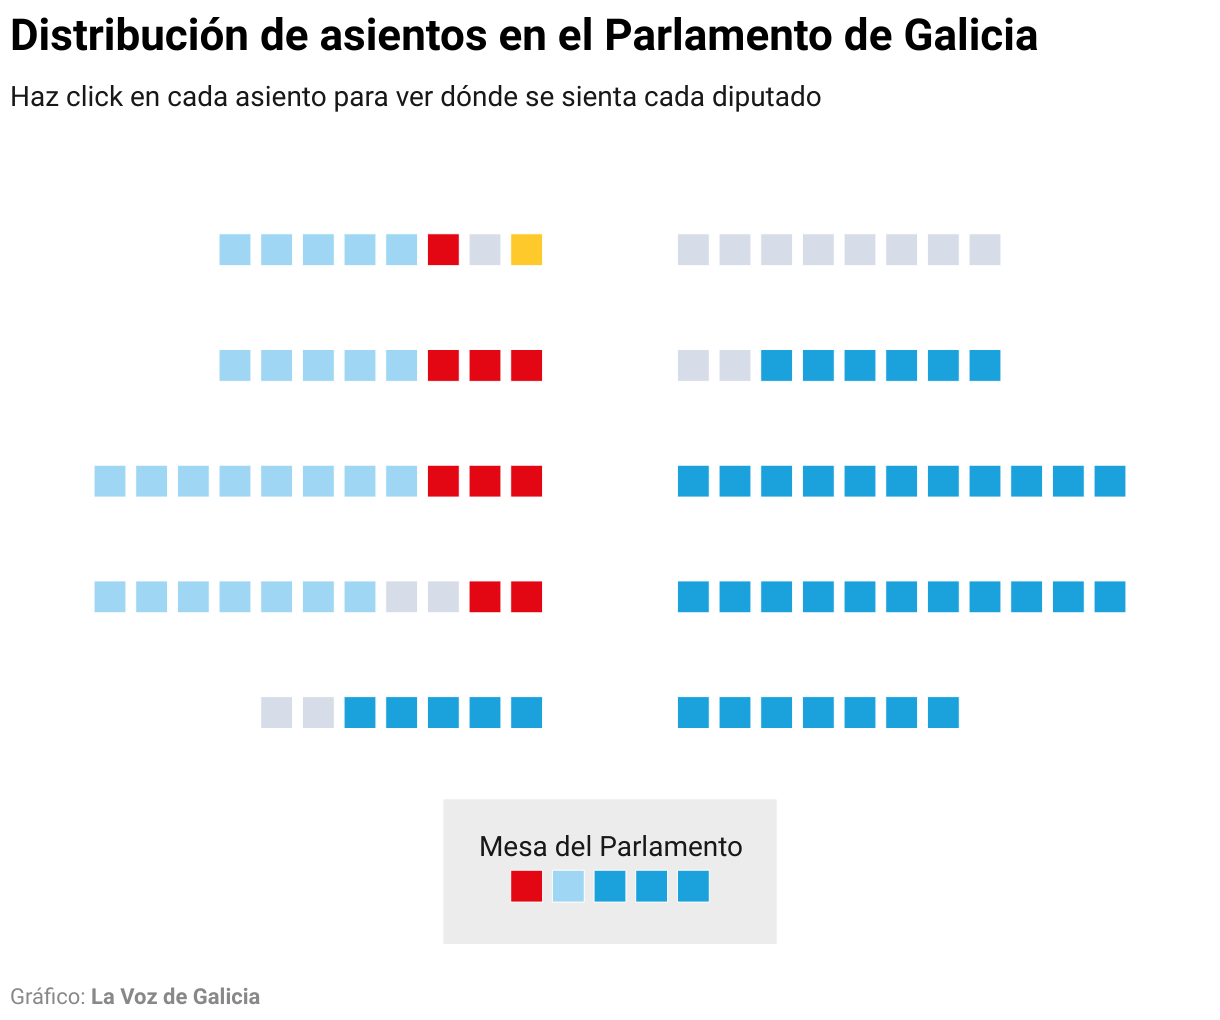 Gráfico con la distribución de los asientos en el Parlamento de Galicia para la duodécima legislatura.